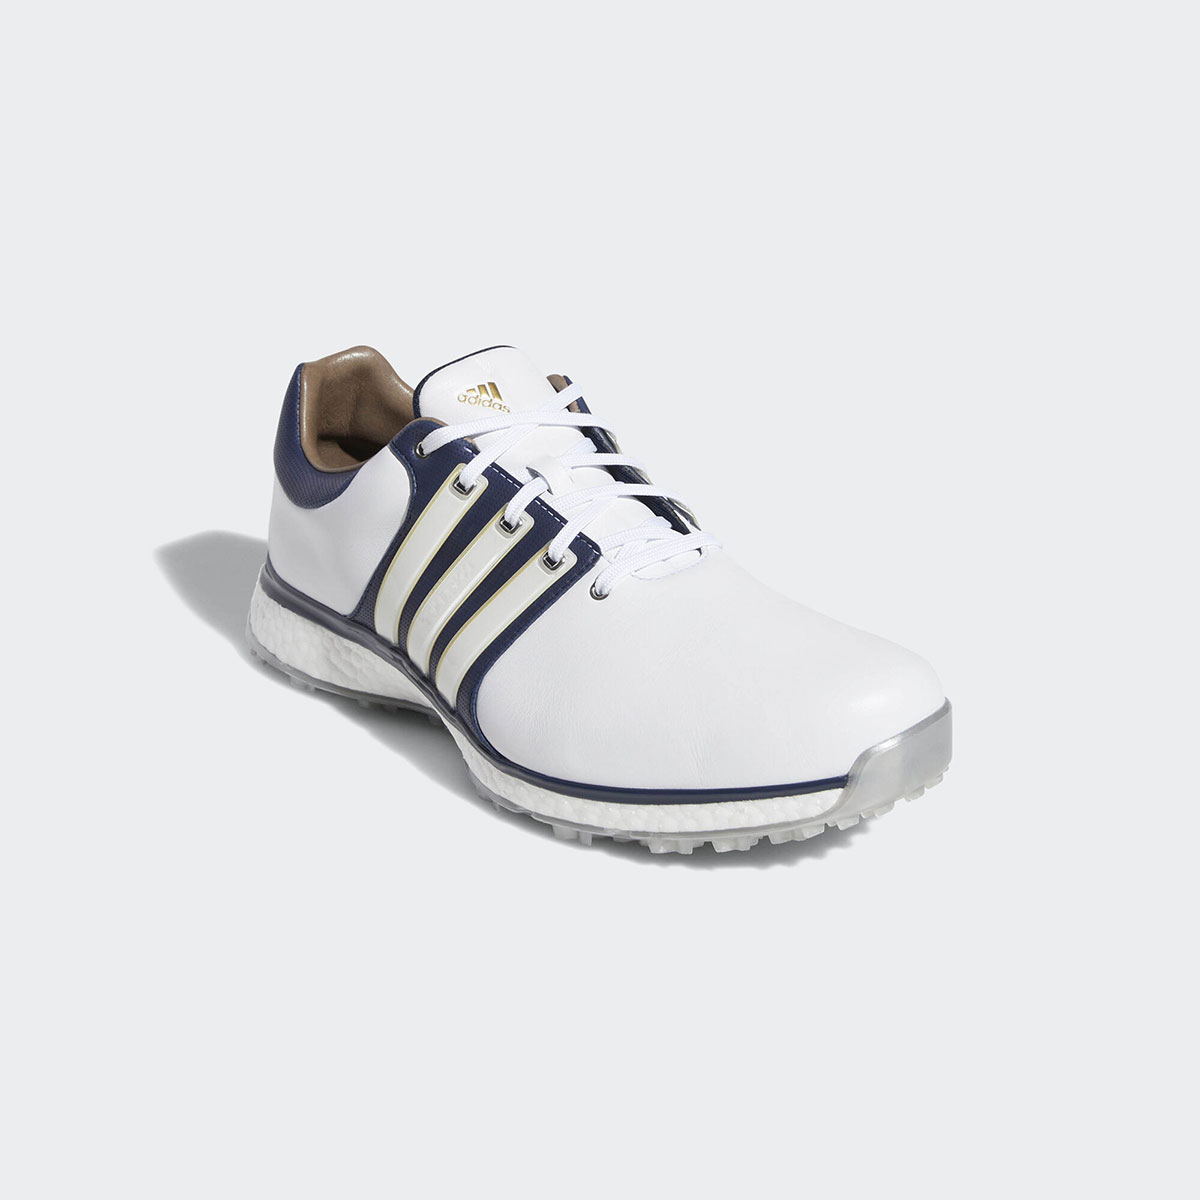 adidas 360 spikeless golf shoes